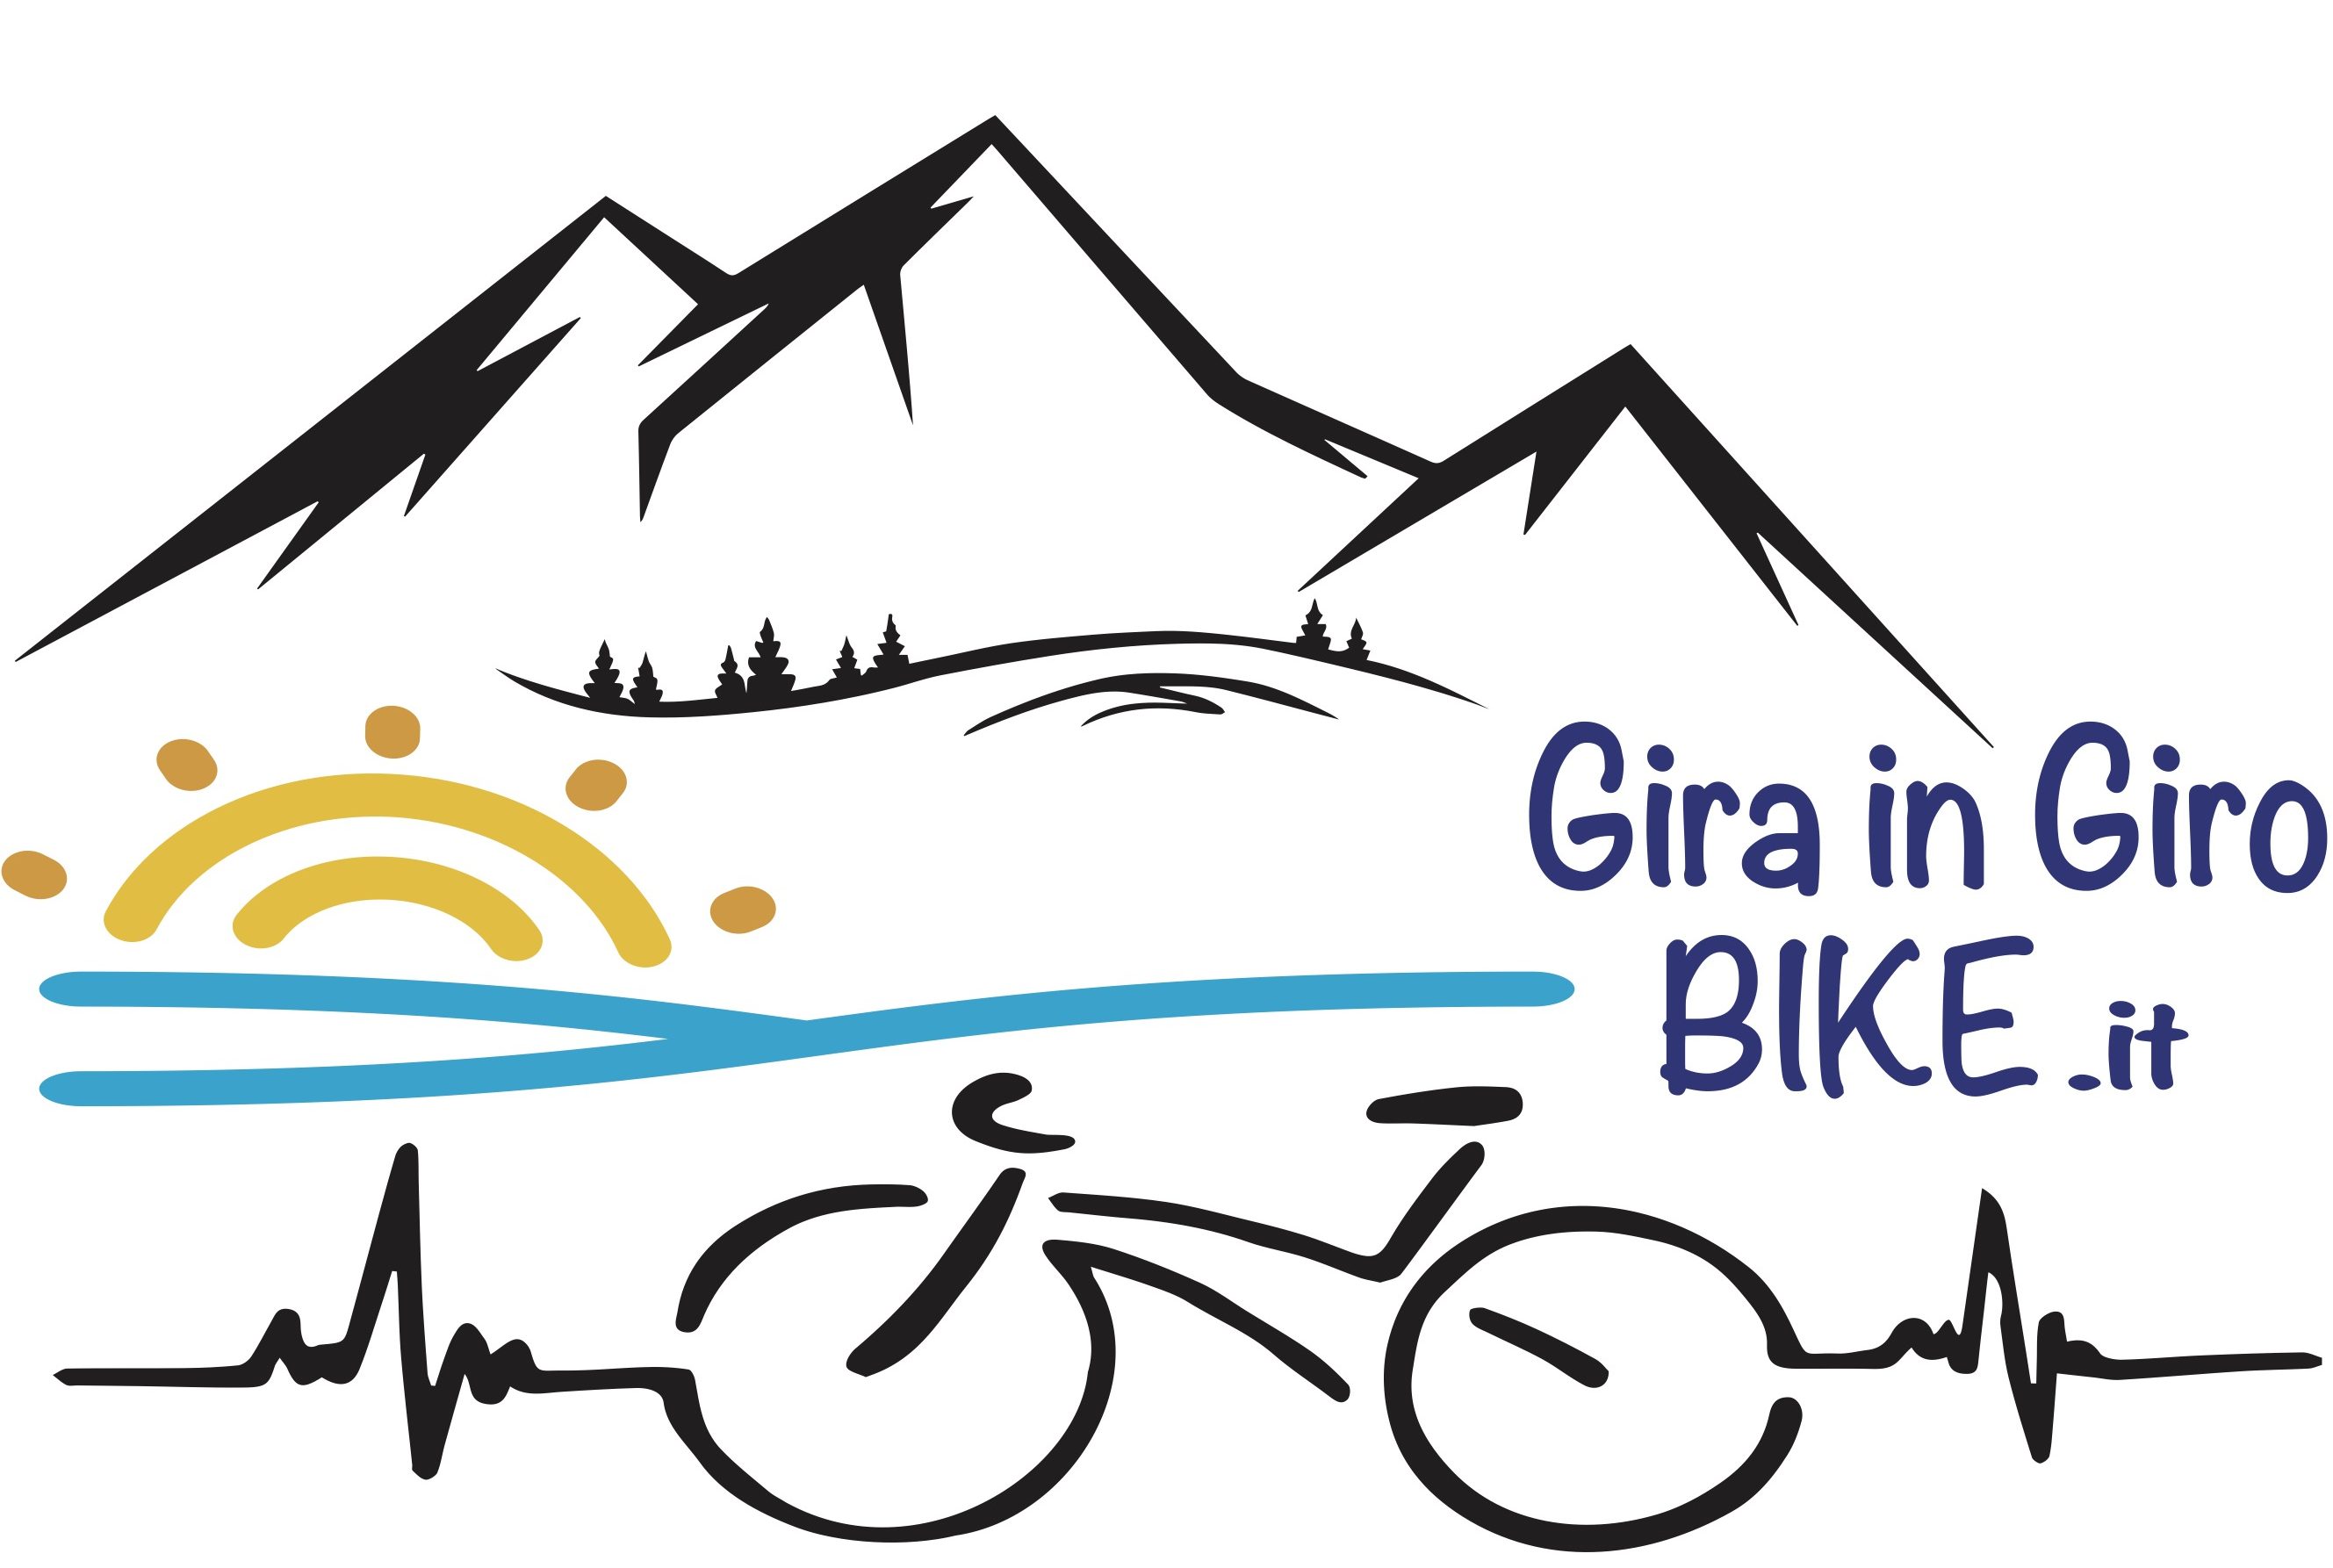 Gira in Giro Bike.it